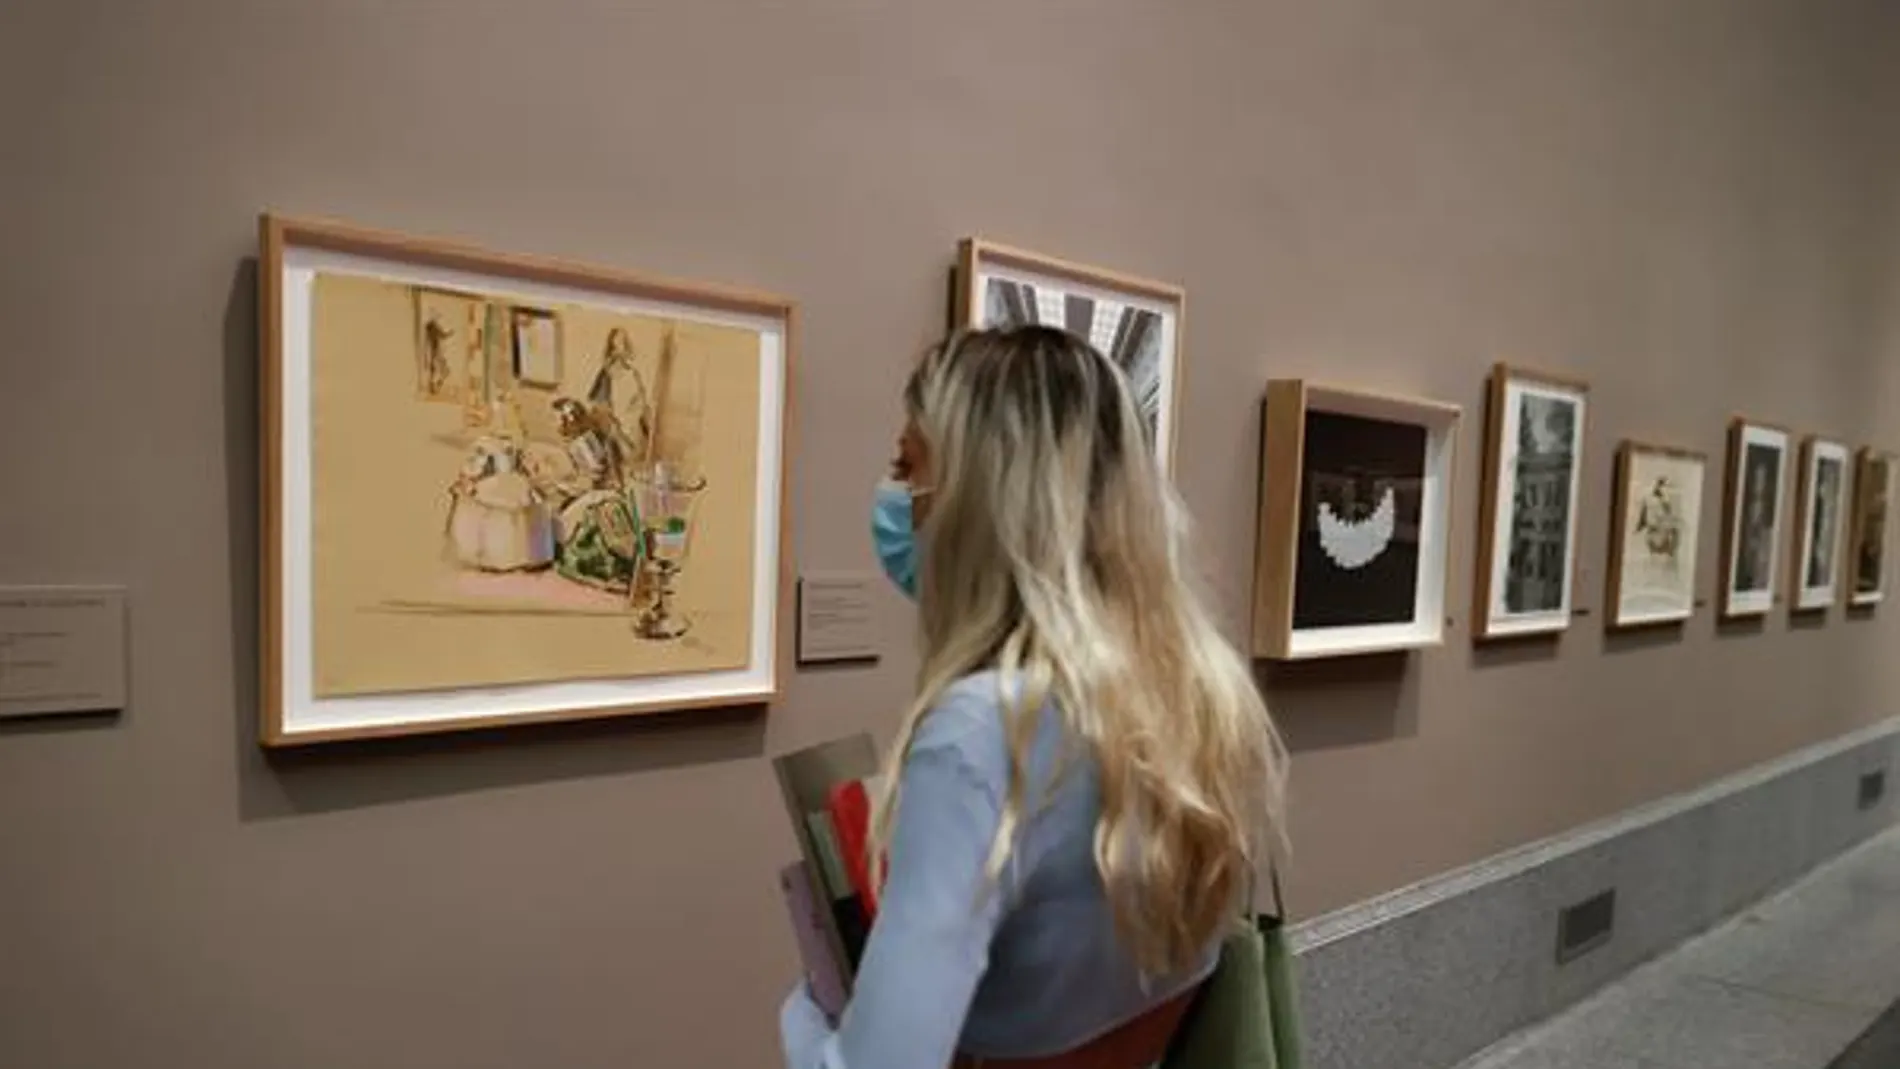 Un empleado del Prado deja en herencia 3,2 millones de euros al museo para comprar nuevas obras